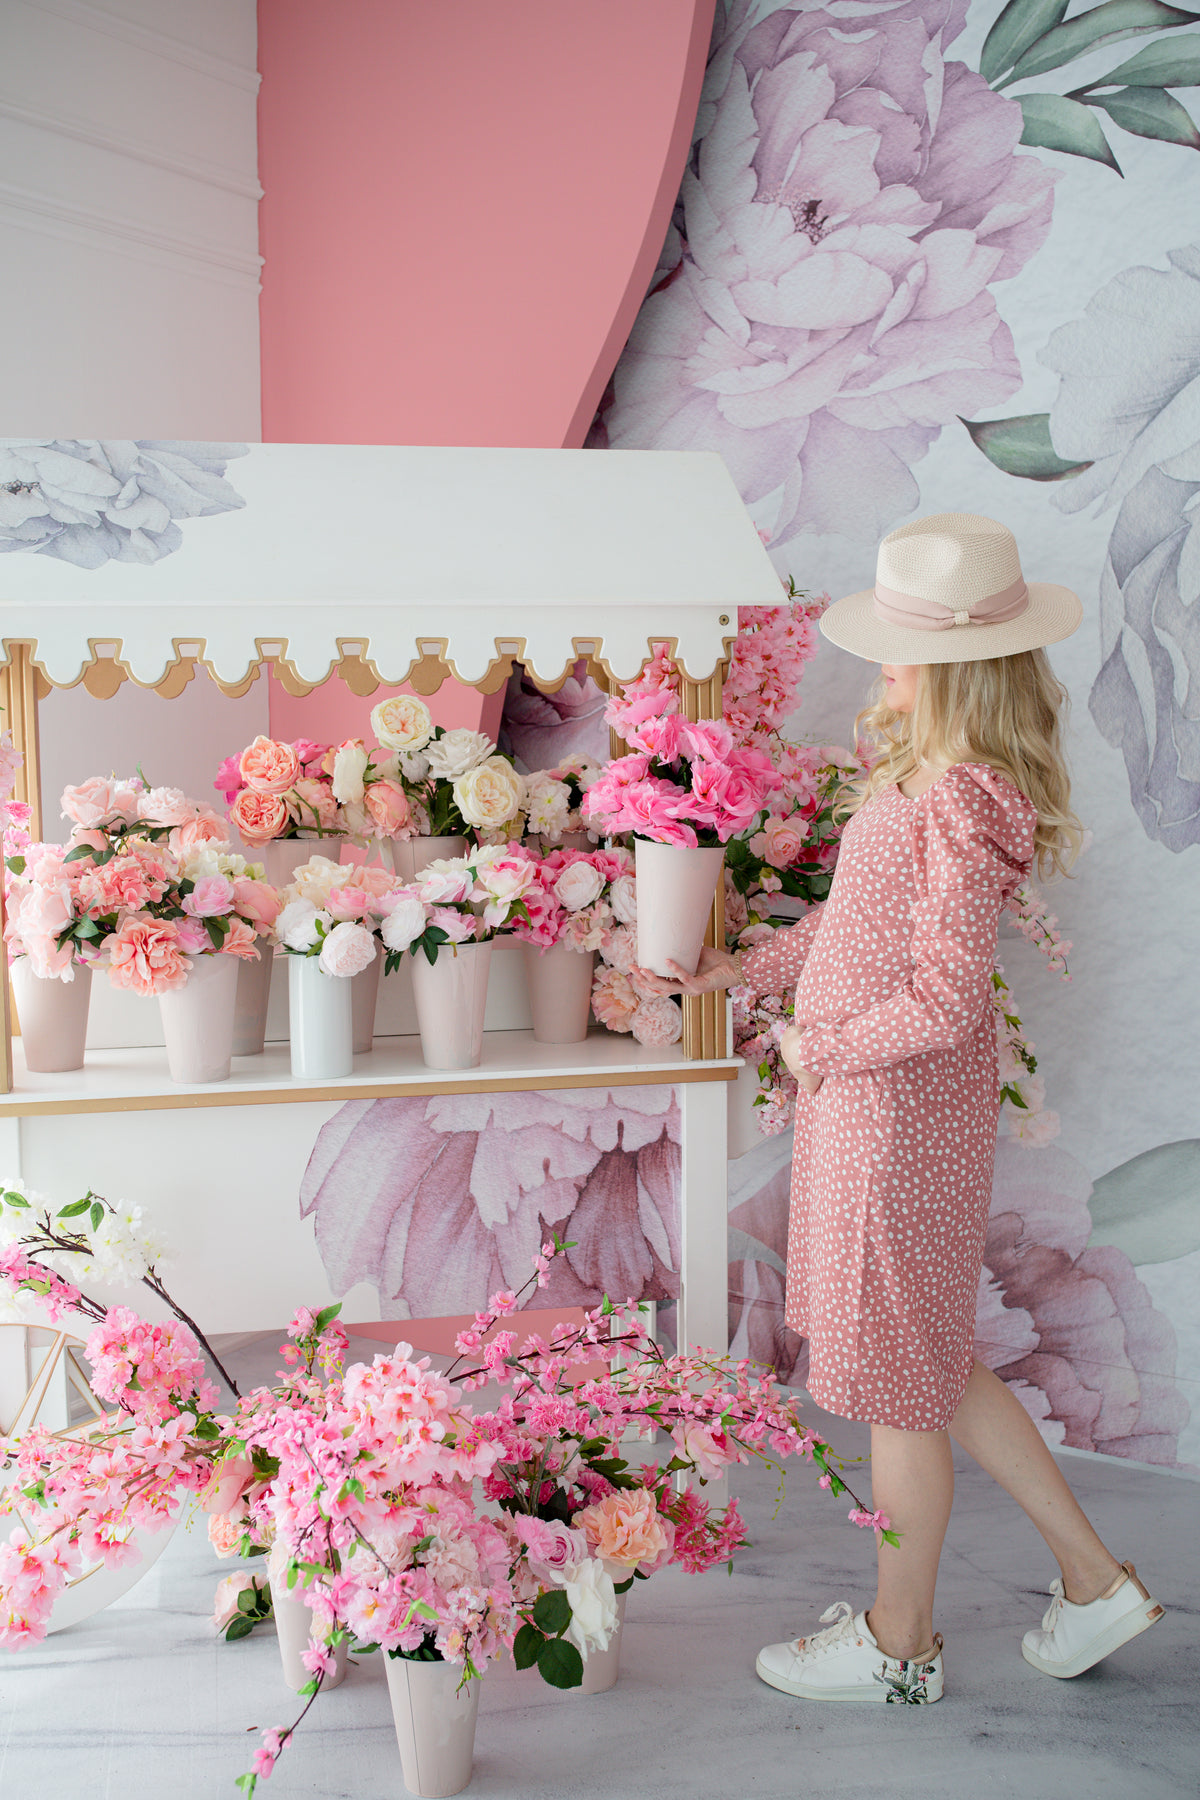 身穿圆点连衣裙的人站在粉红色的花架旁